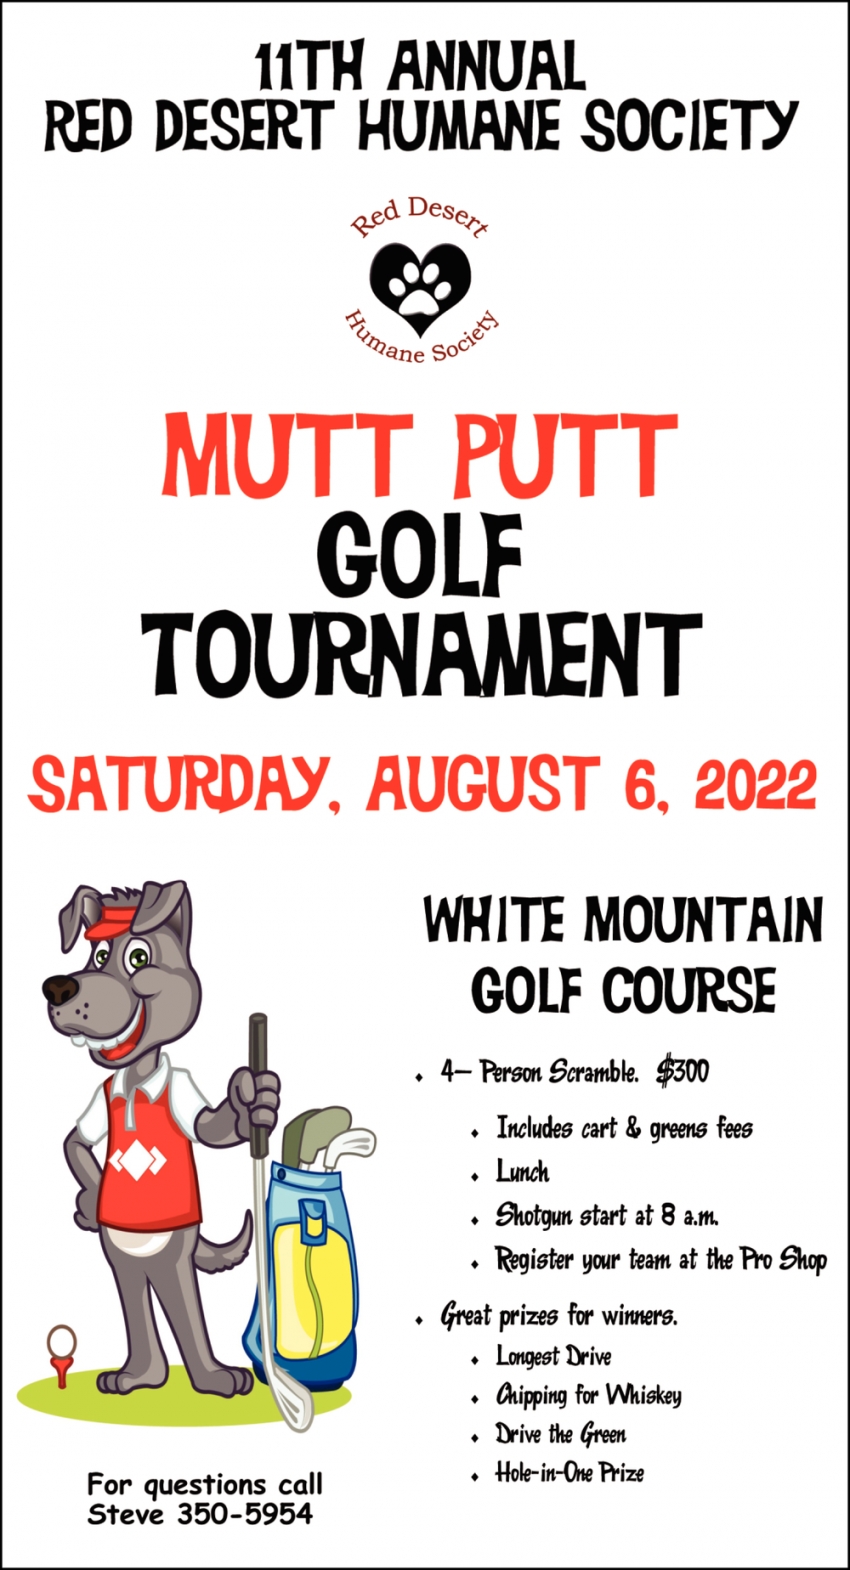 Mutt Putt Golf Tournament